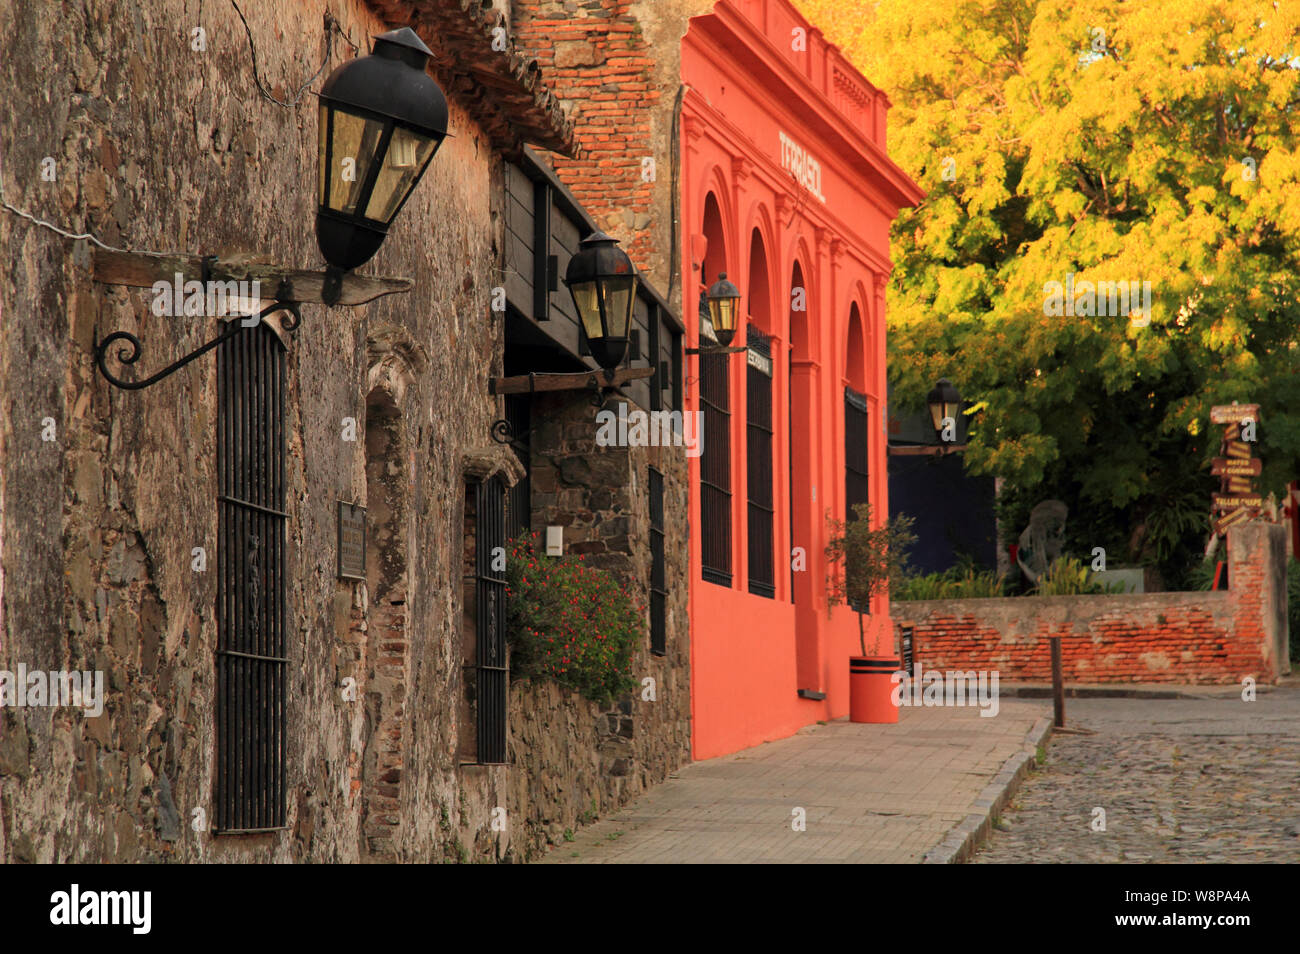 Ruines anciennes, rues pavées pittoresques, et le portugais et l'architecture espagnole constituent certaines des fonctionnalités de premier de Colonia del Sacramento en Uruguay Banque D'Images